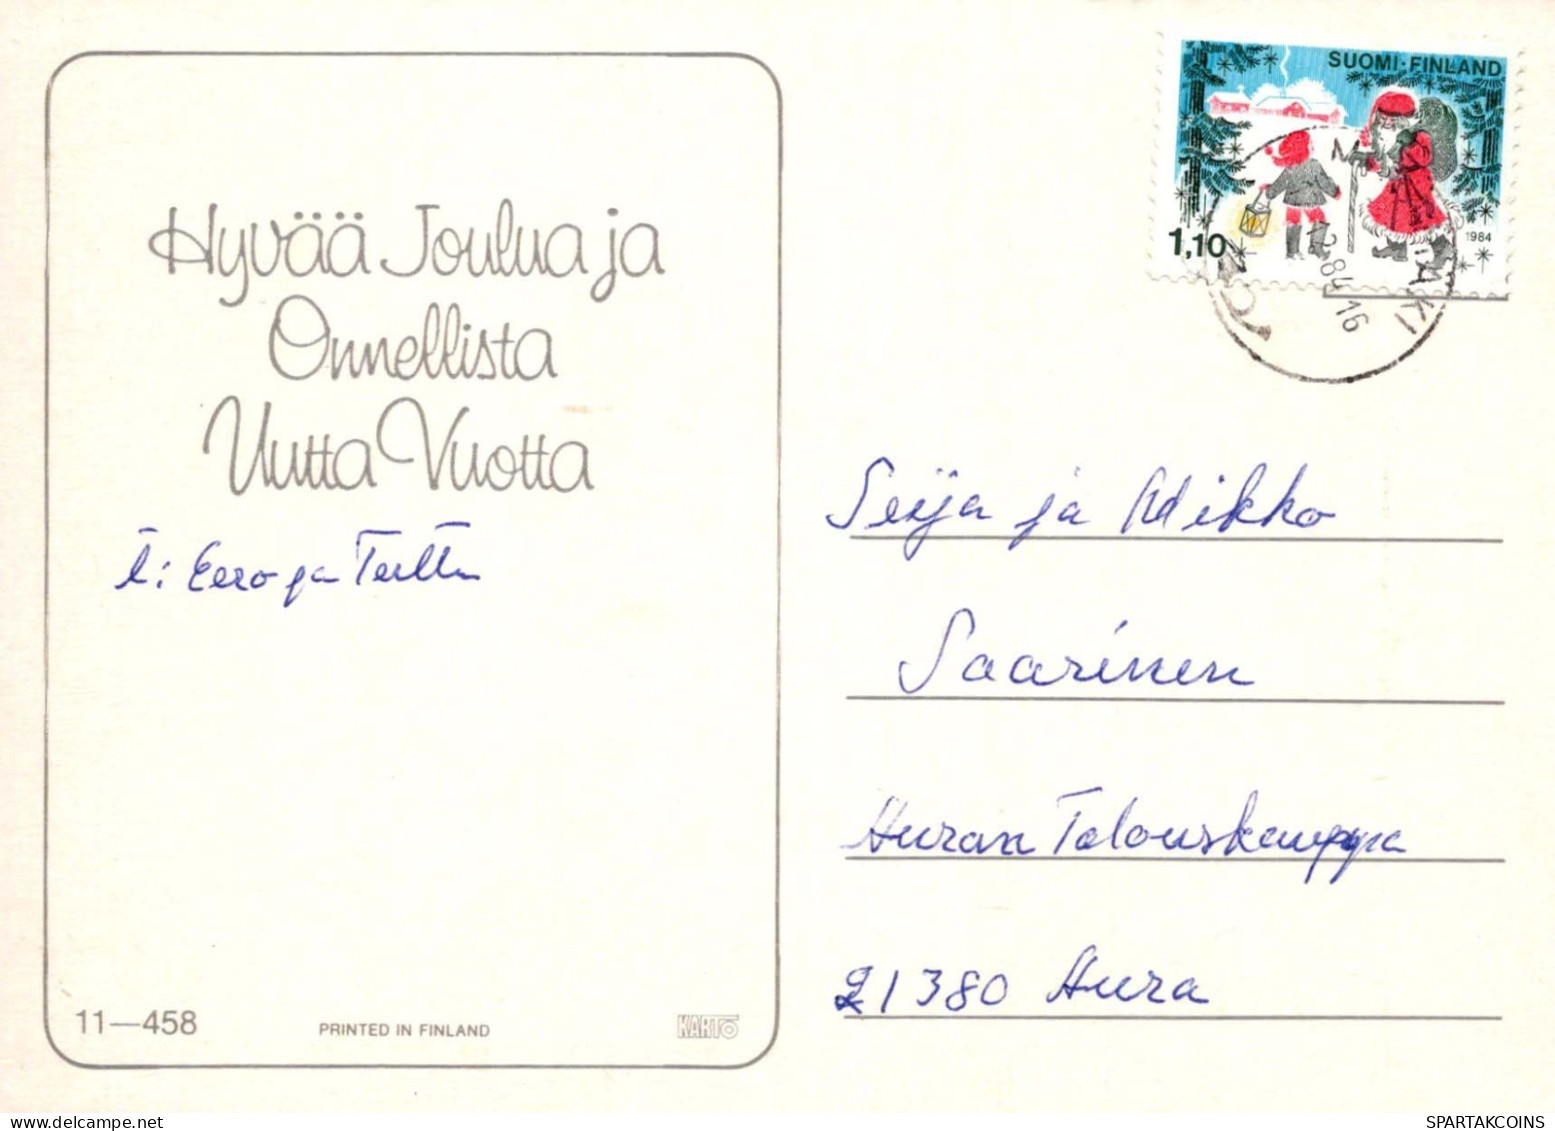 Neujahr Weihnachten KERZE Vintage Ansichtskarte Postkarte CPSM #PBA243.DE - Nouvel An